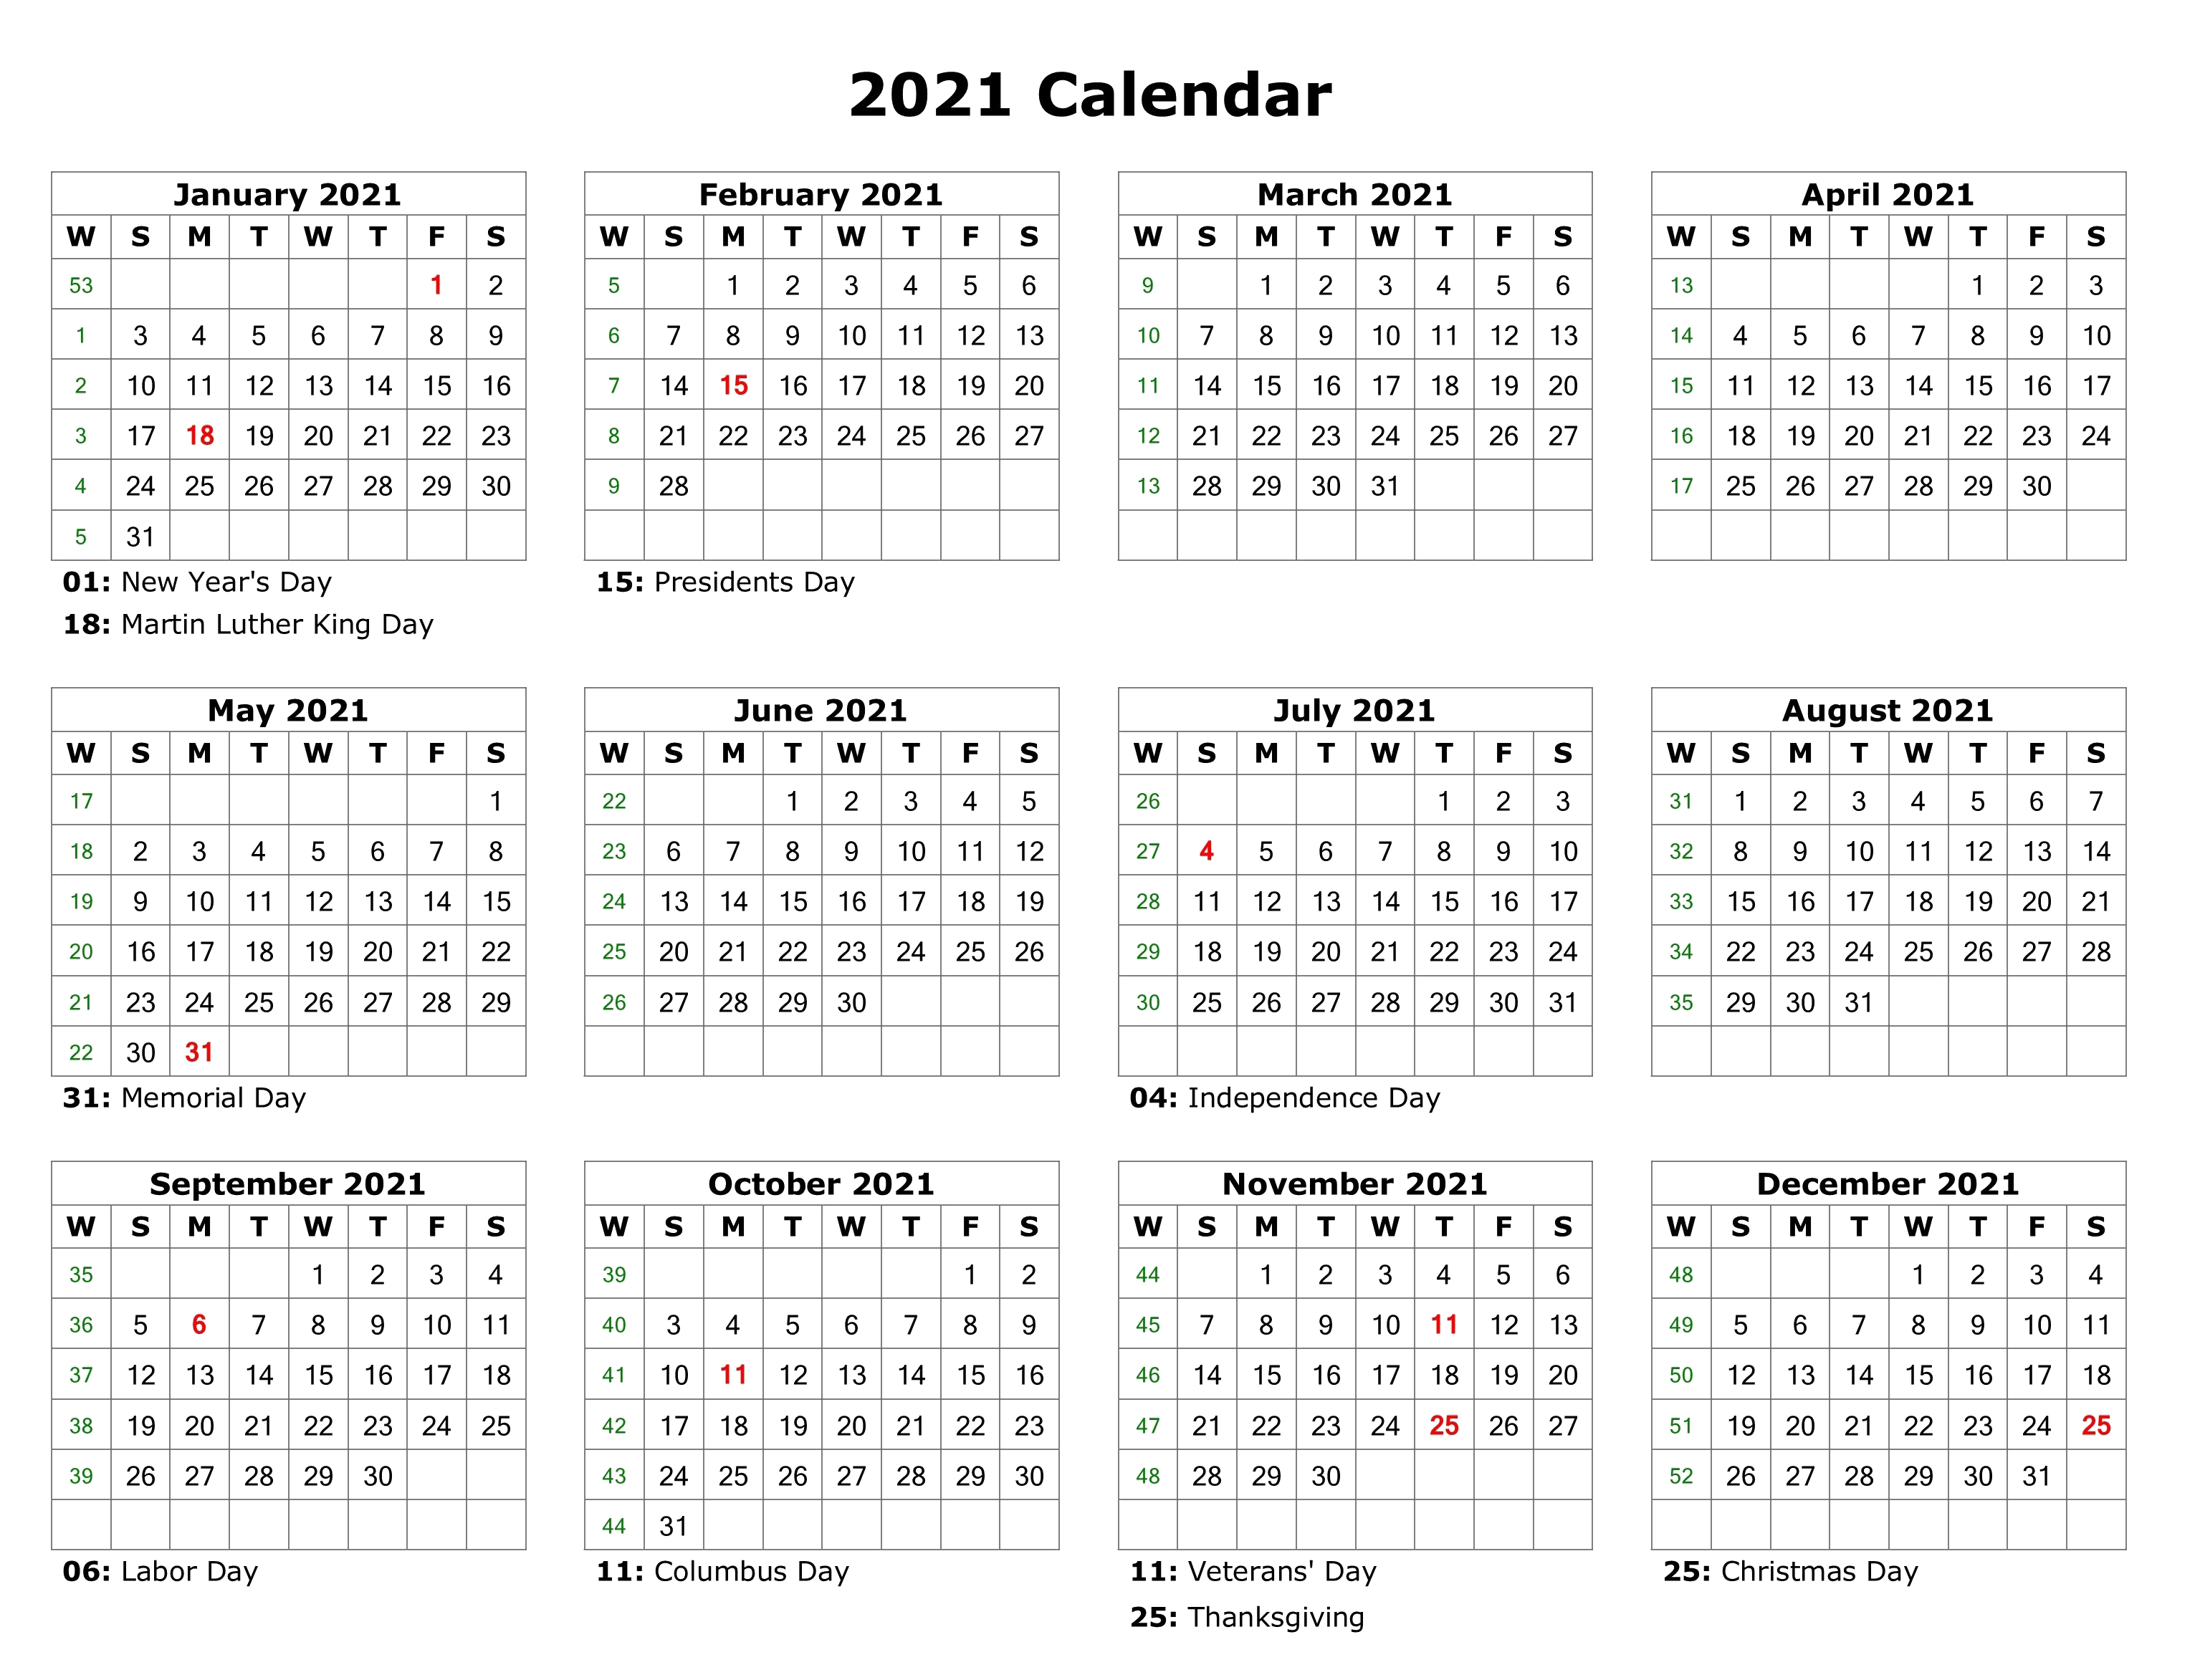 Calendar 2021 PNG Transparent Image